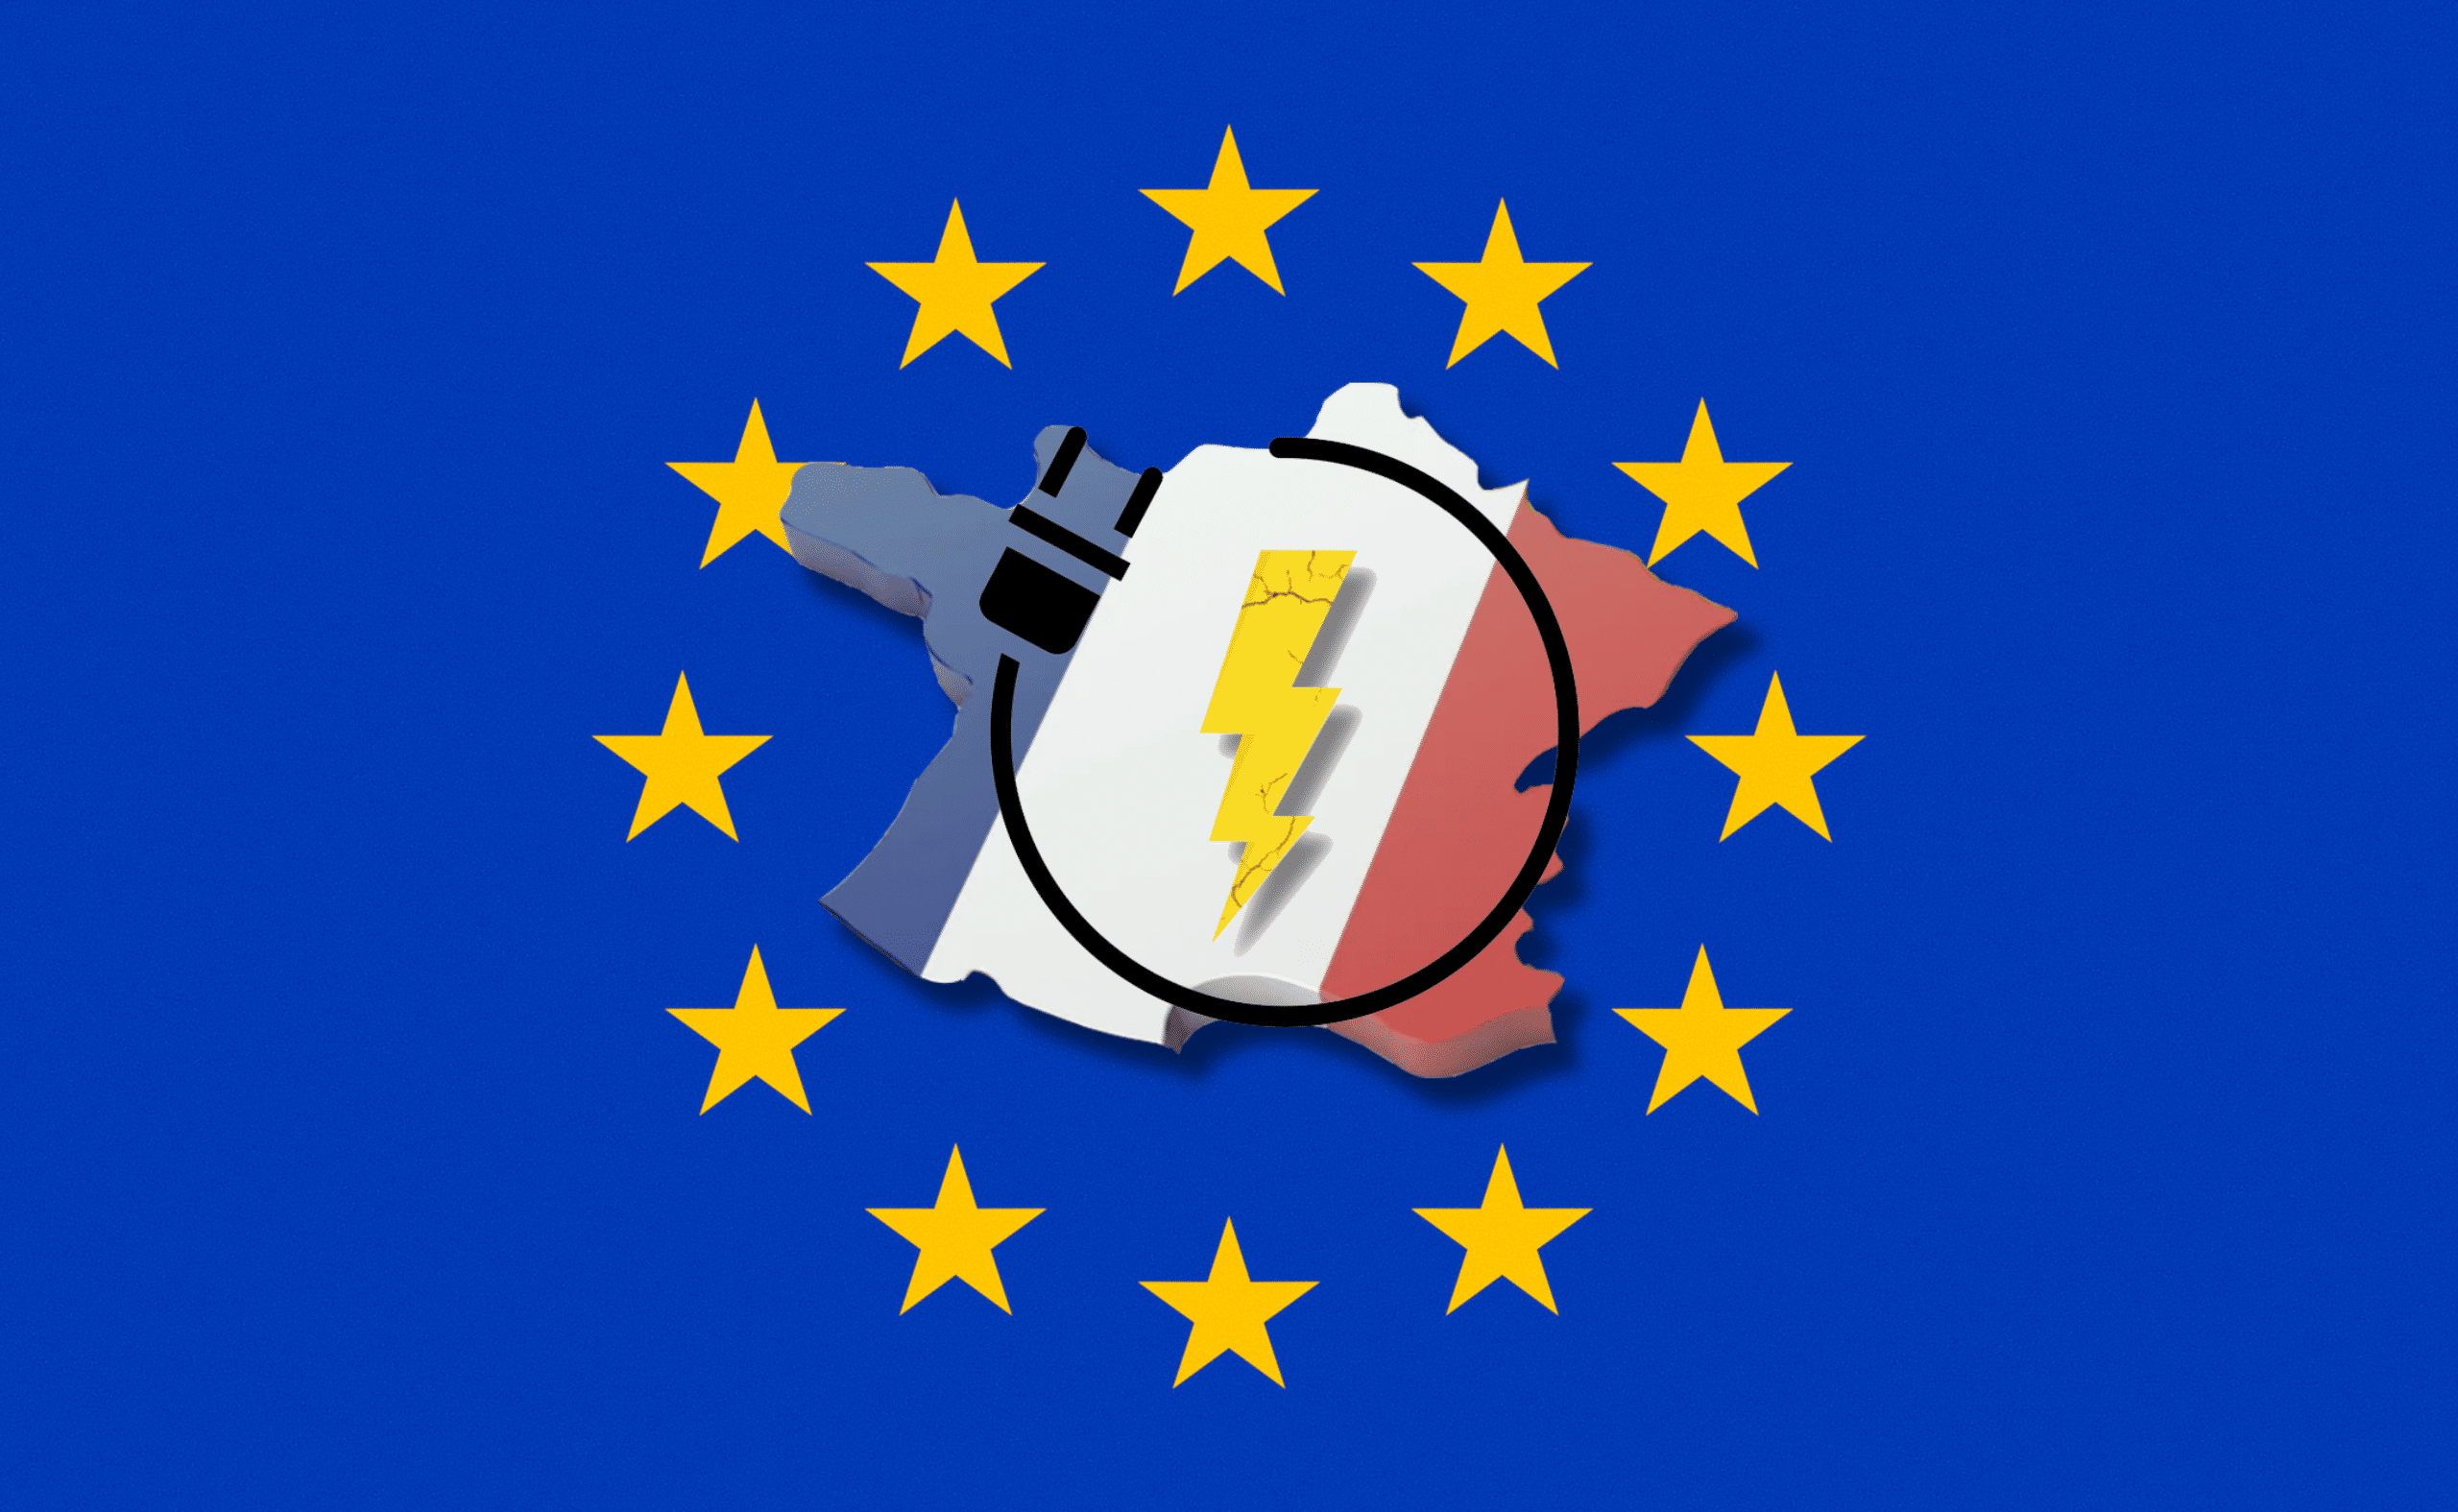 ADIMAS | Coûts et prix de l’électricité sous influence de l’UE